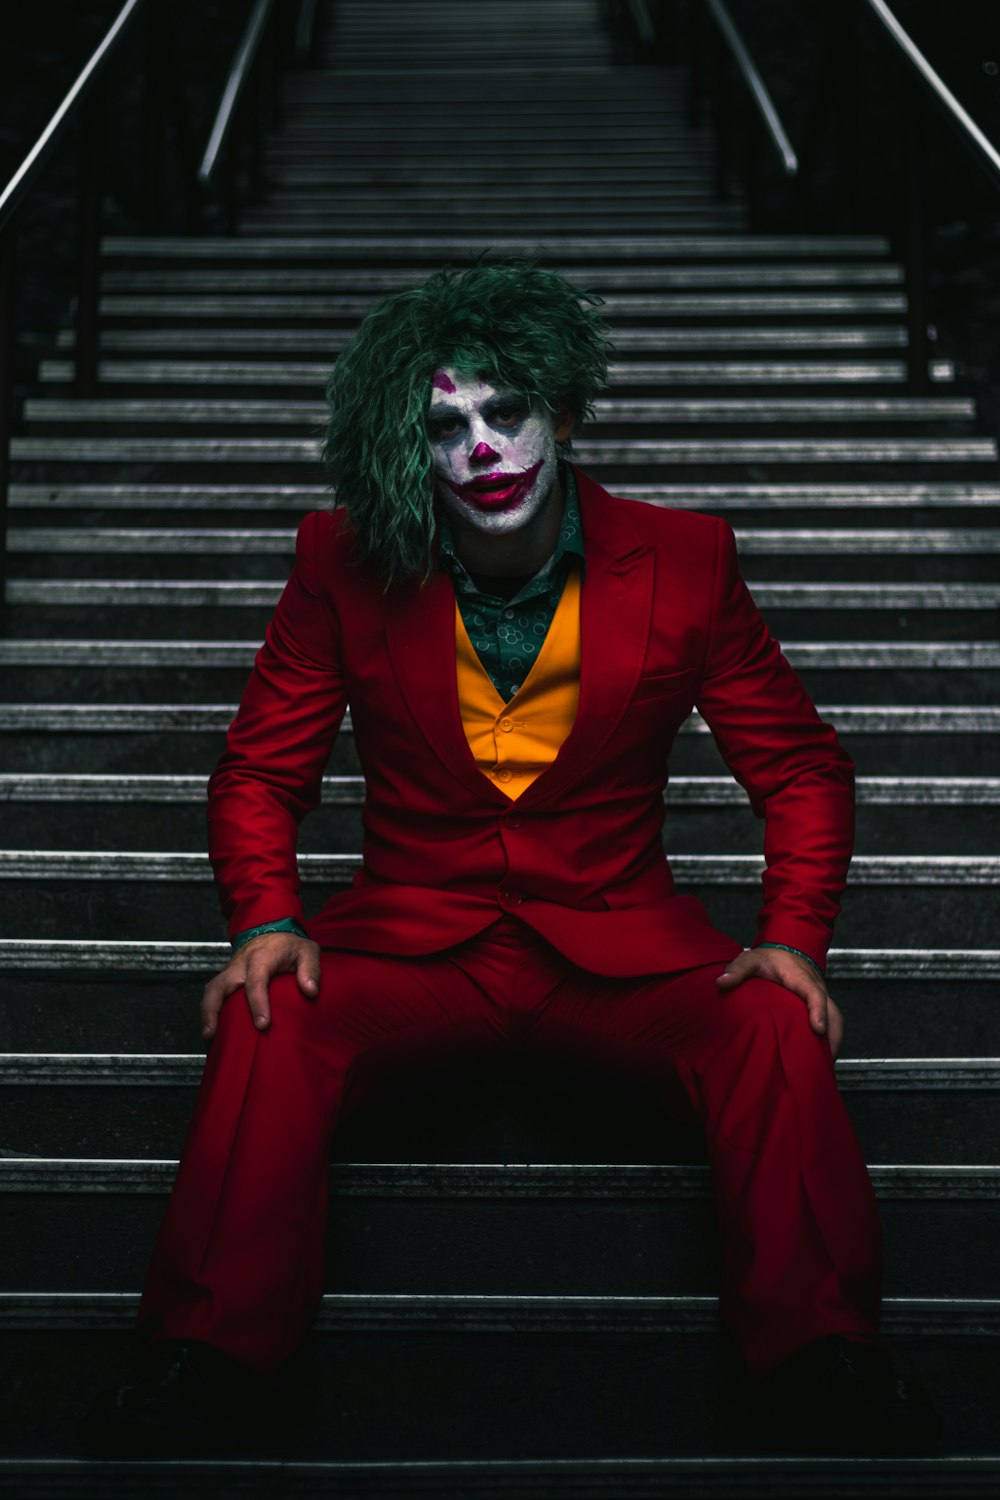 500 Joker Images Download Free Pictures On Unsplash